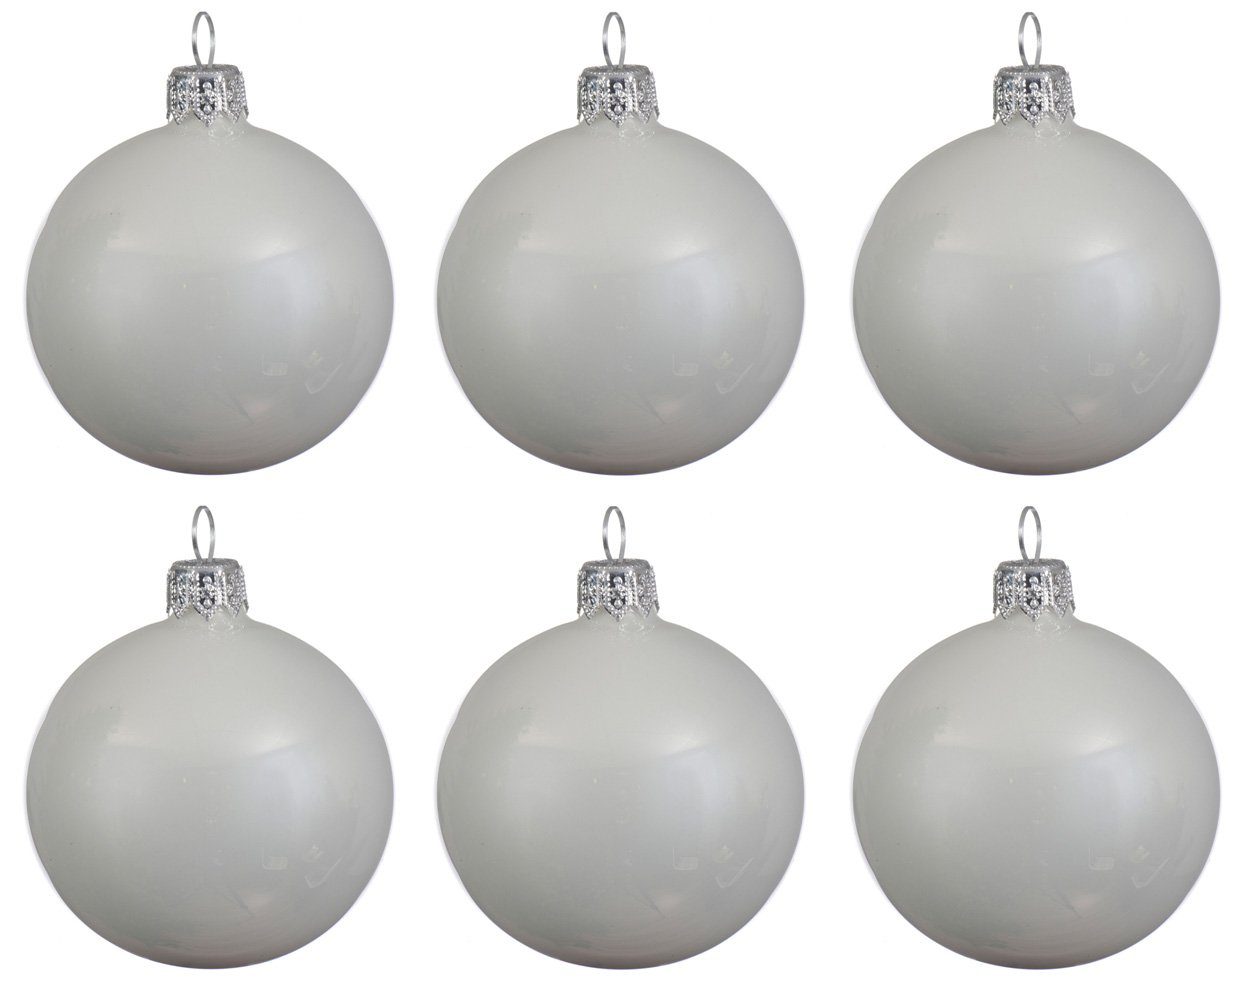 8cm Weihnachtsbaumkugel, Box Weihnachtskugeln mundgeblasen - glänzend Glas decorations Decoris season Winterweiß 6er